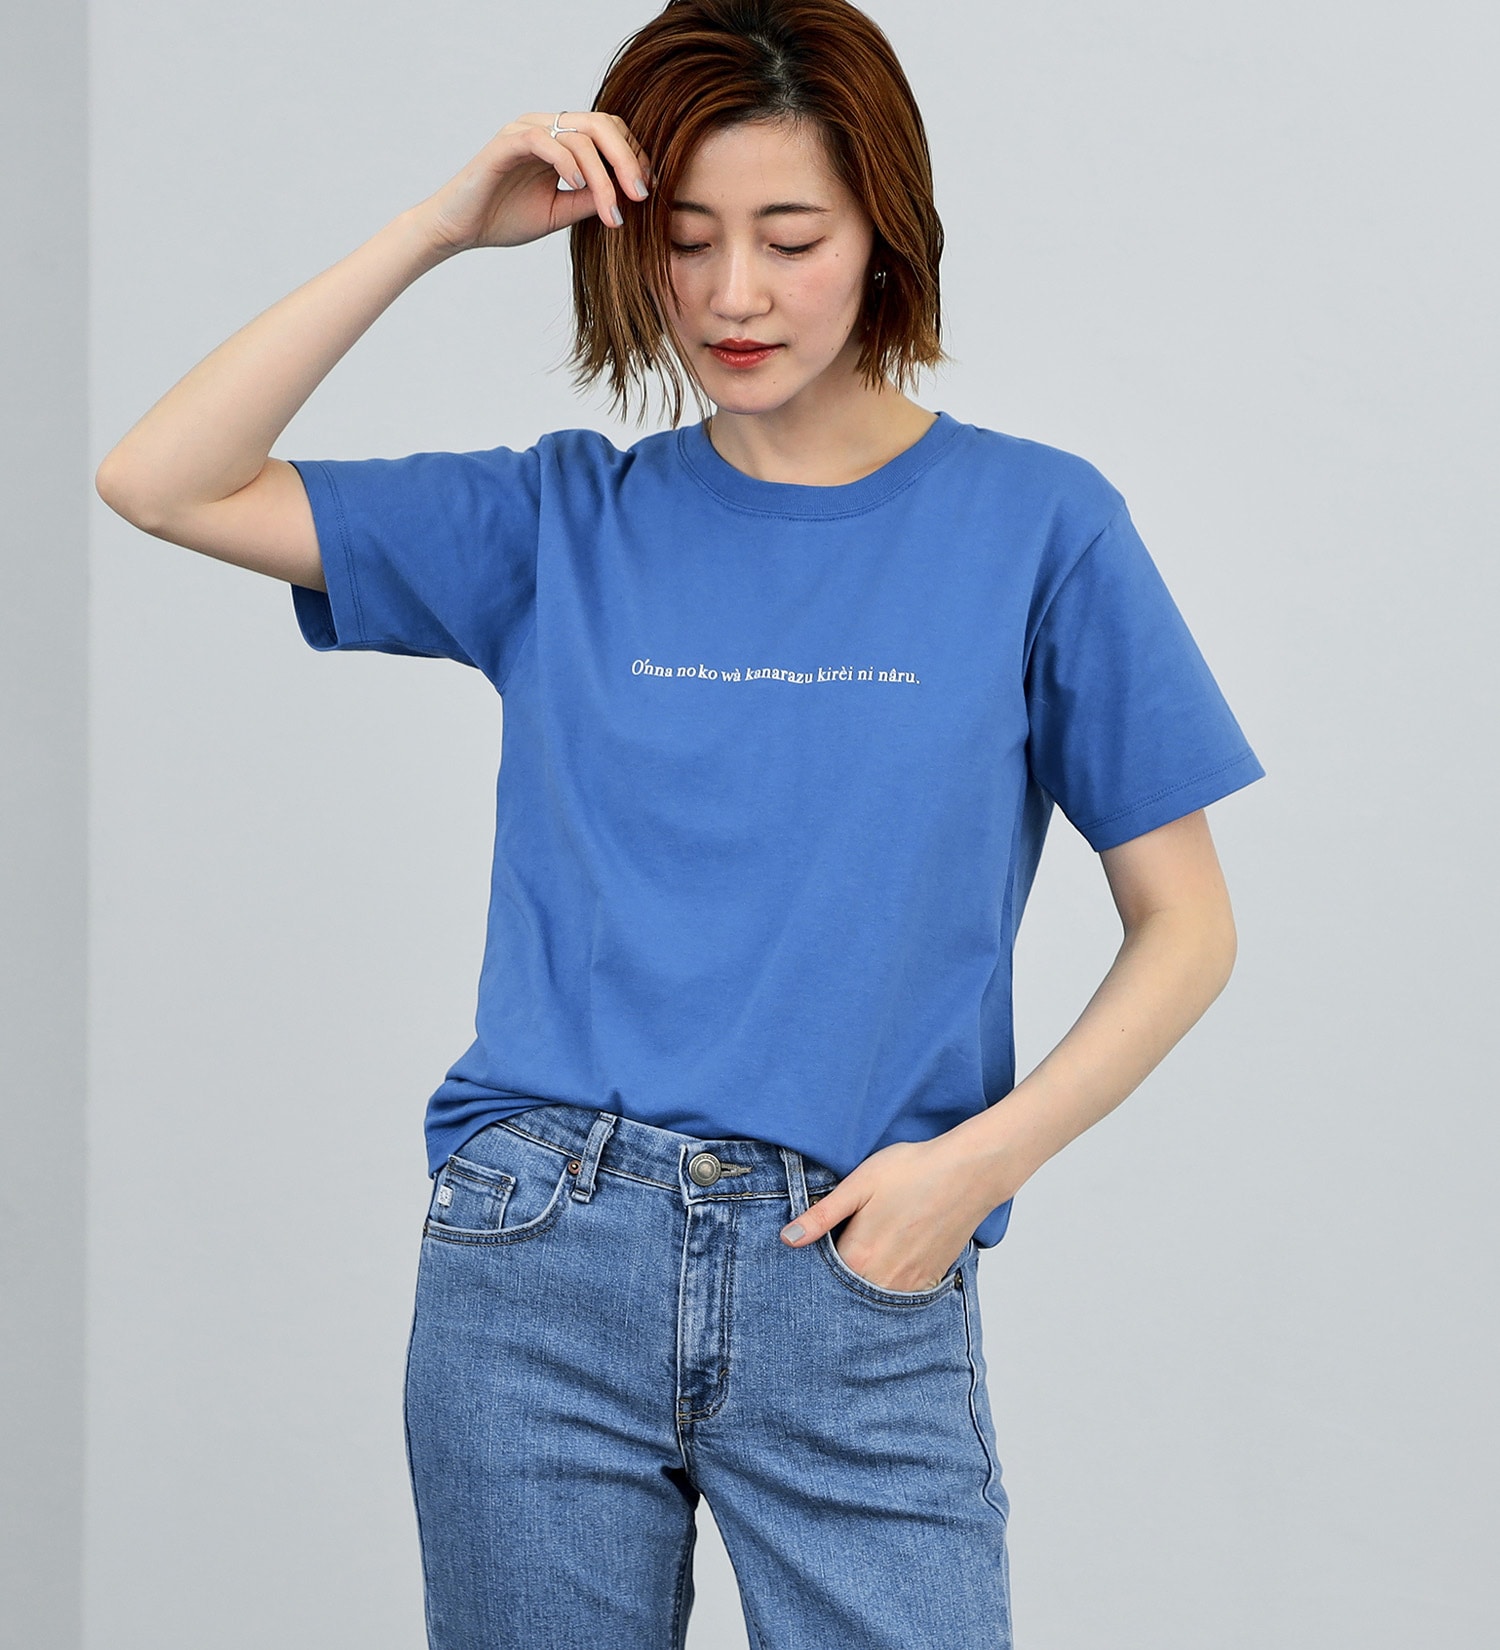 SOMETHING(サムシング)のSOMETHING コンセプトロゴ半袖Tシャツ|トップス/Tシャツ/カットソー/レディース|ブルー